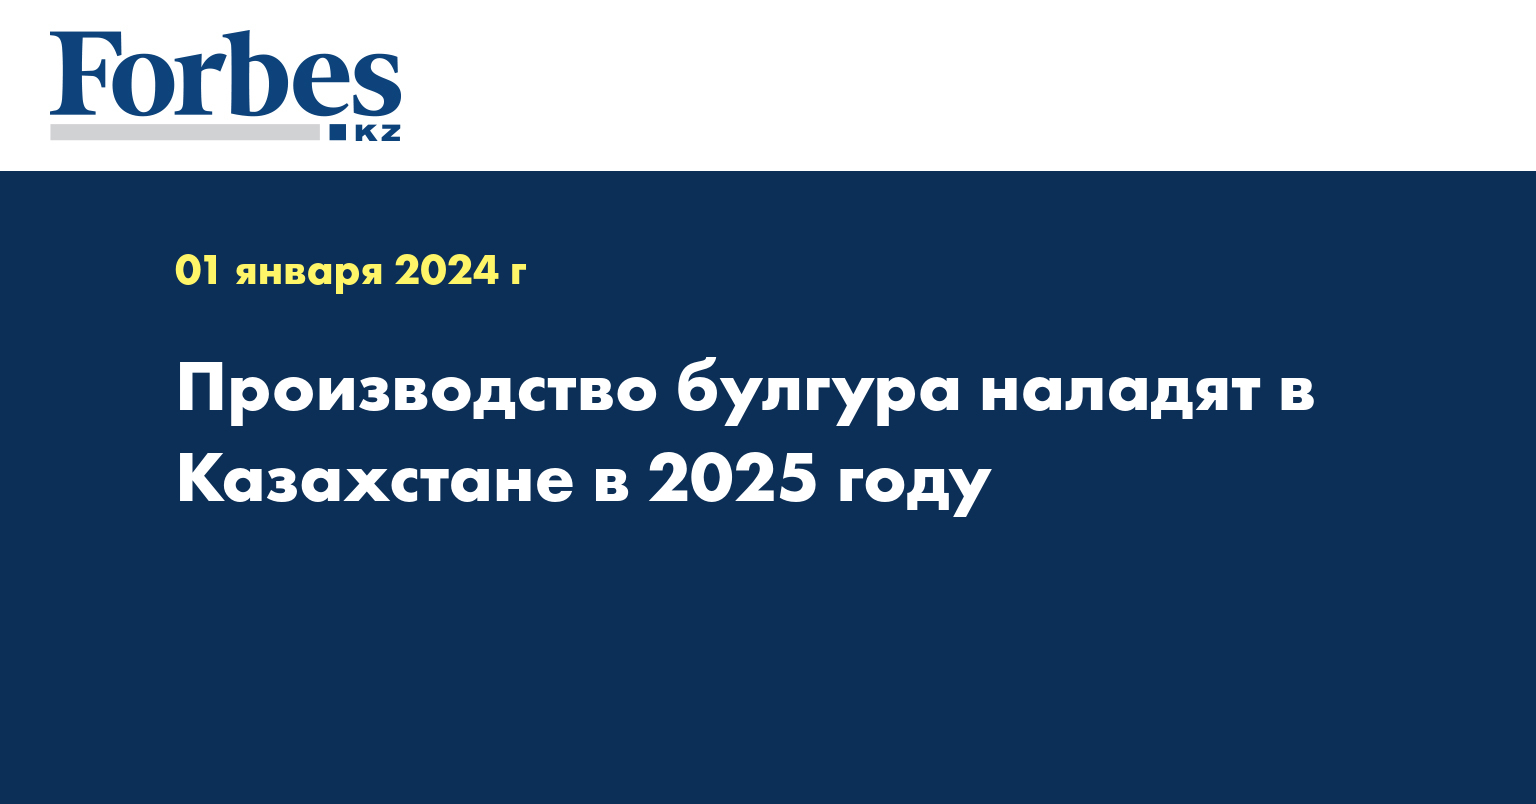 Производство булгура наладят в Казахстане в 2025 году